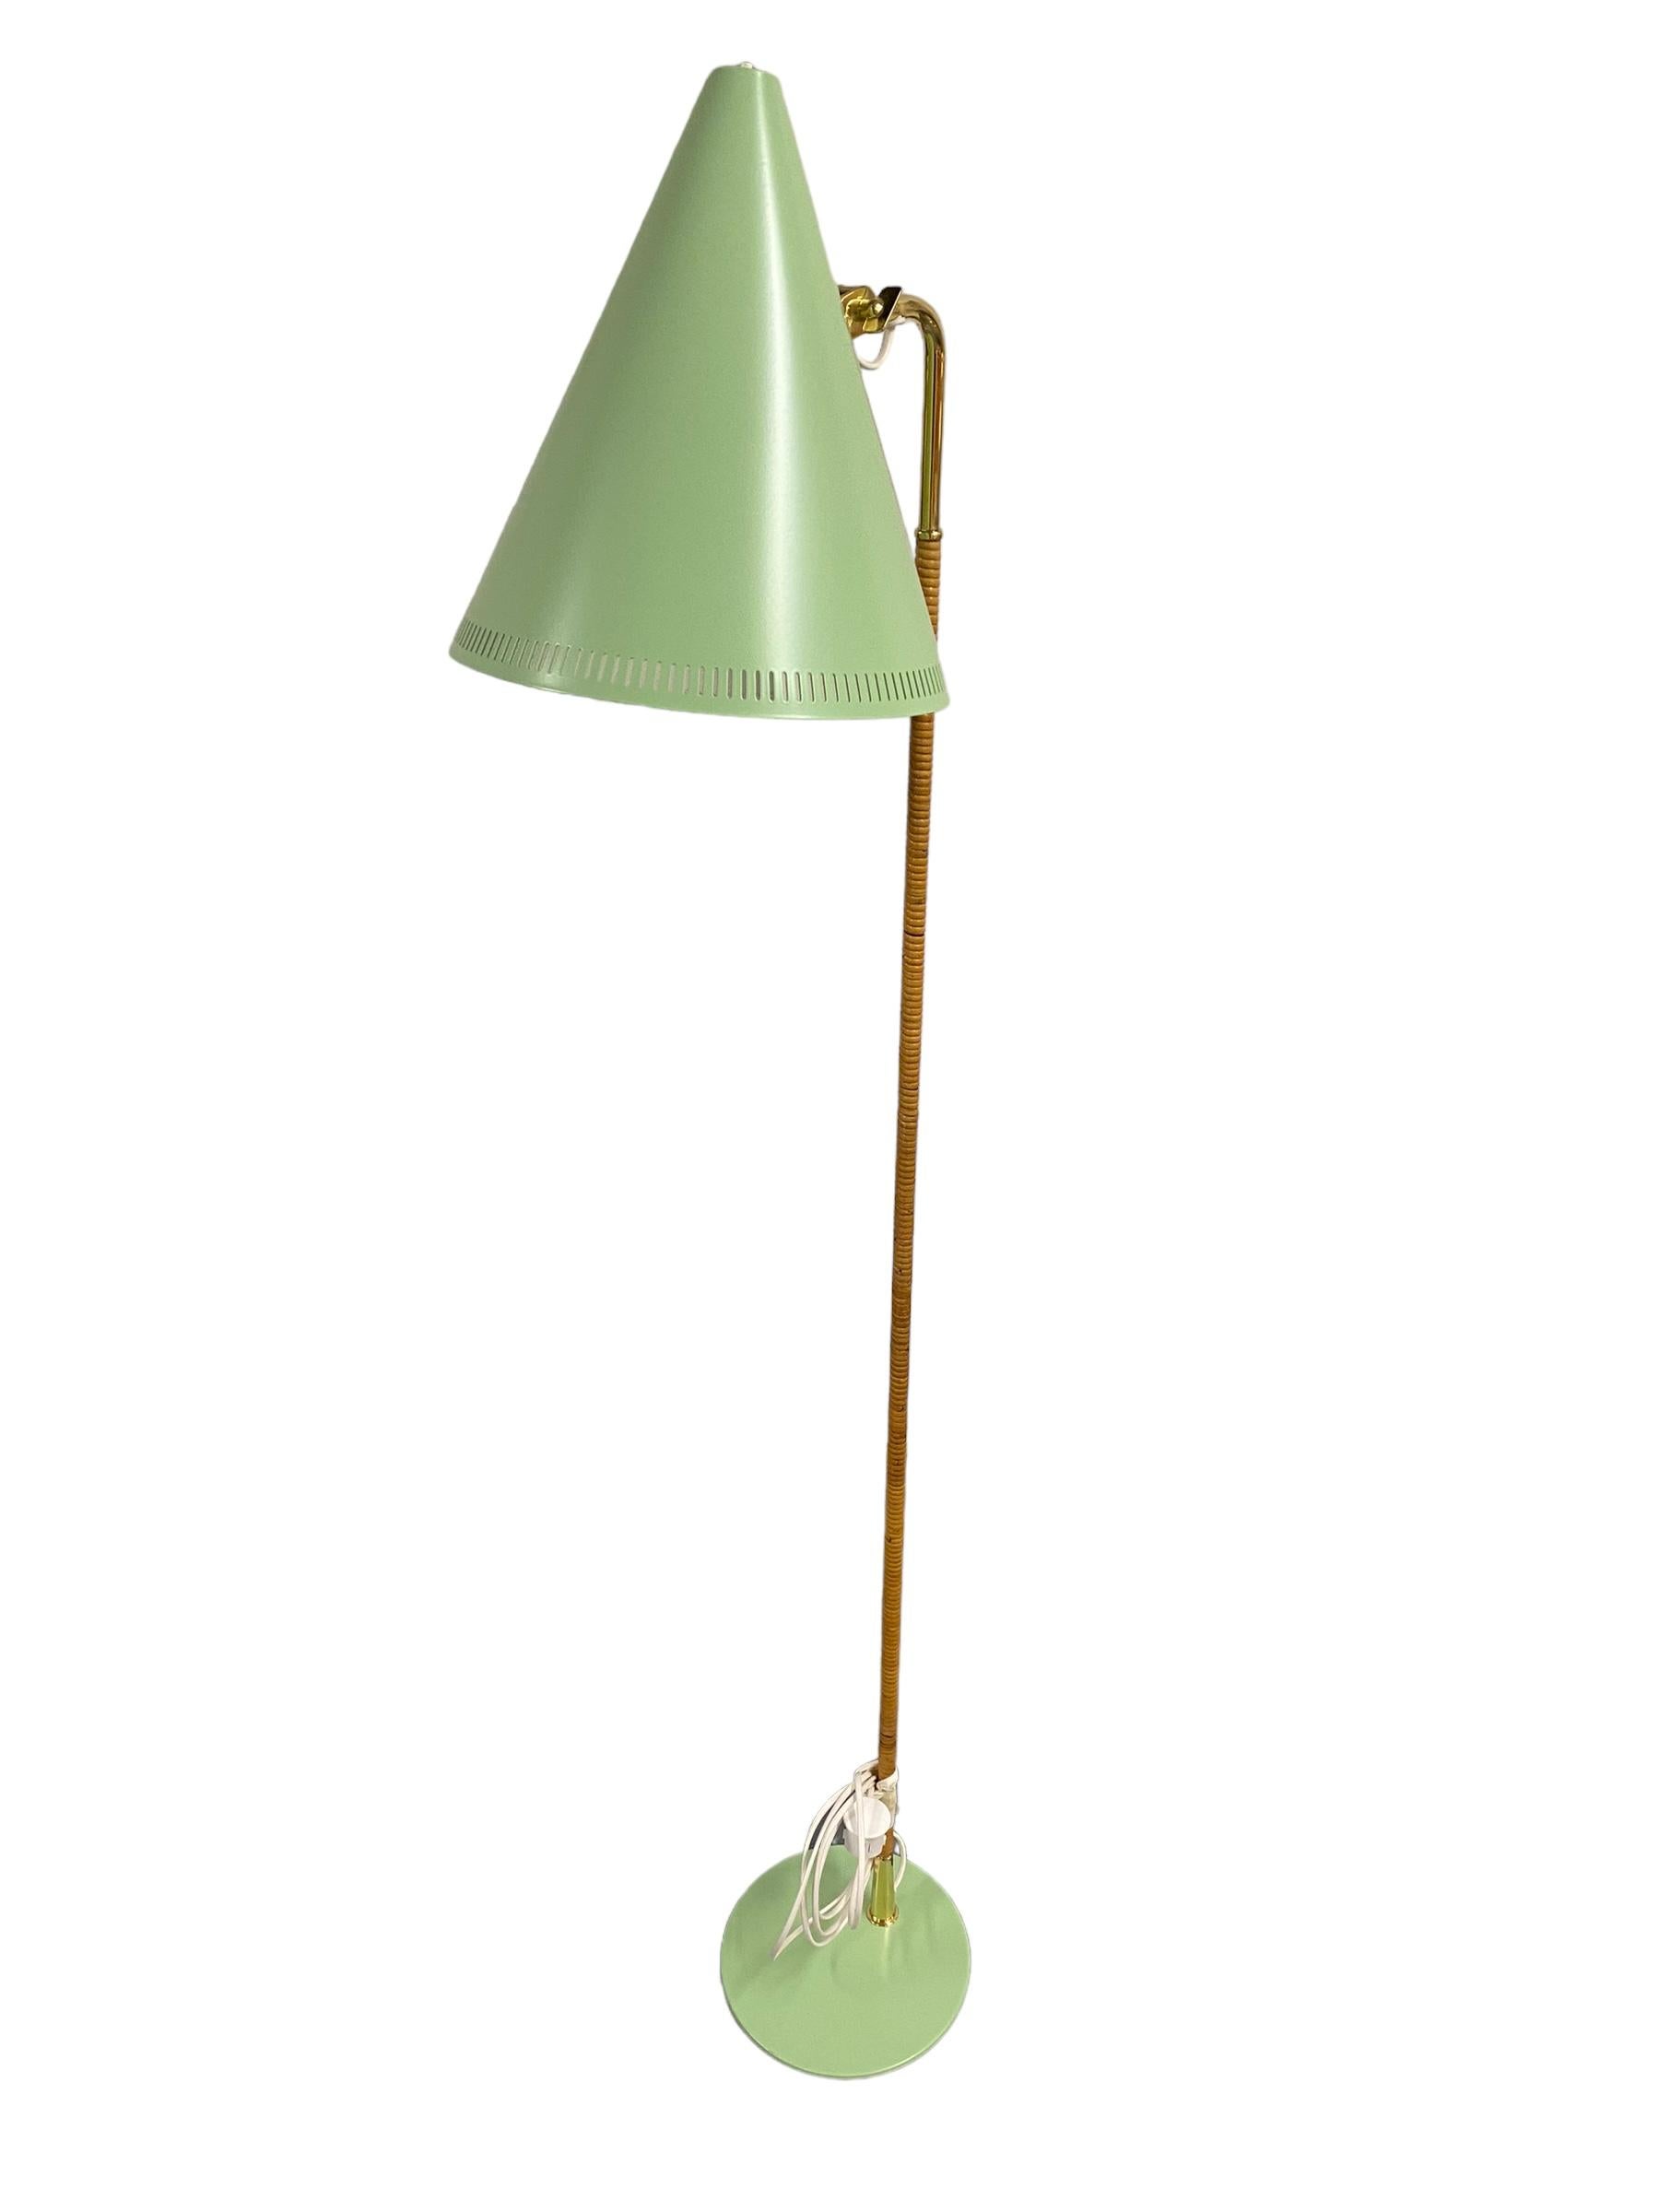 Lampadaire emblématique modèle k10-10 conçu par Paavo Tynell pour Idman dans les années 1950. La lampe a été repeinte en vert menthe, en remplacement des versions noires et blanches qui sont les couleurs les plus fréquentes. L'article est par